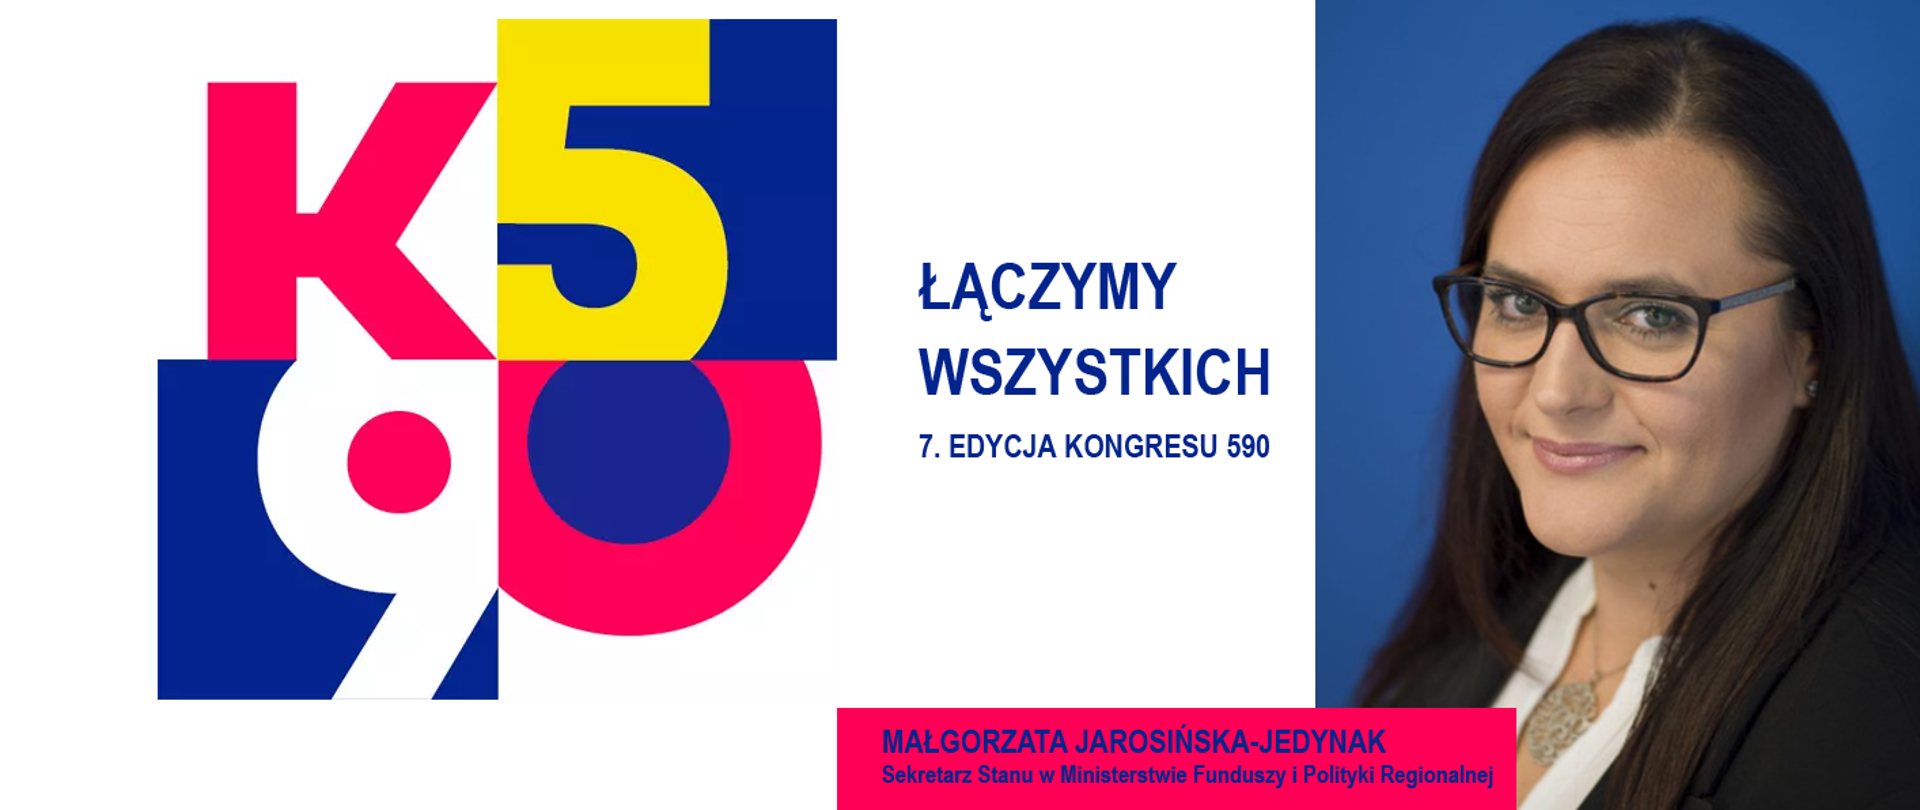 Na grafice zdjęcie portretowe wiceminister Małgorzaty Jarosińskiej-Jedynak i podpis pod nim, logotyp Kongresu 590 oraz napis: "Łączymy wszystkich, 7.edycja Kongresu 590".